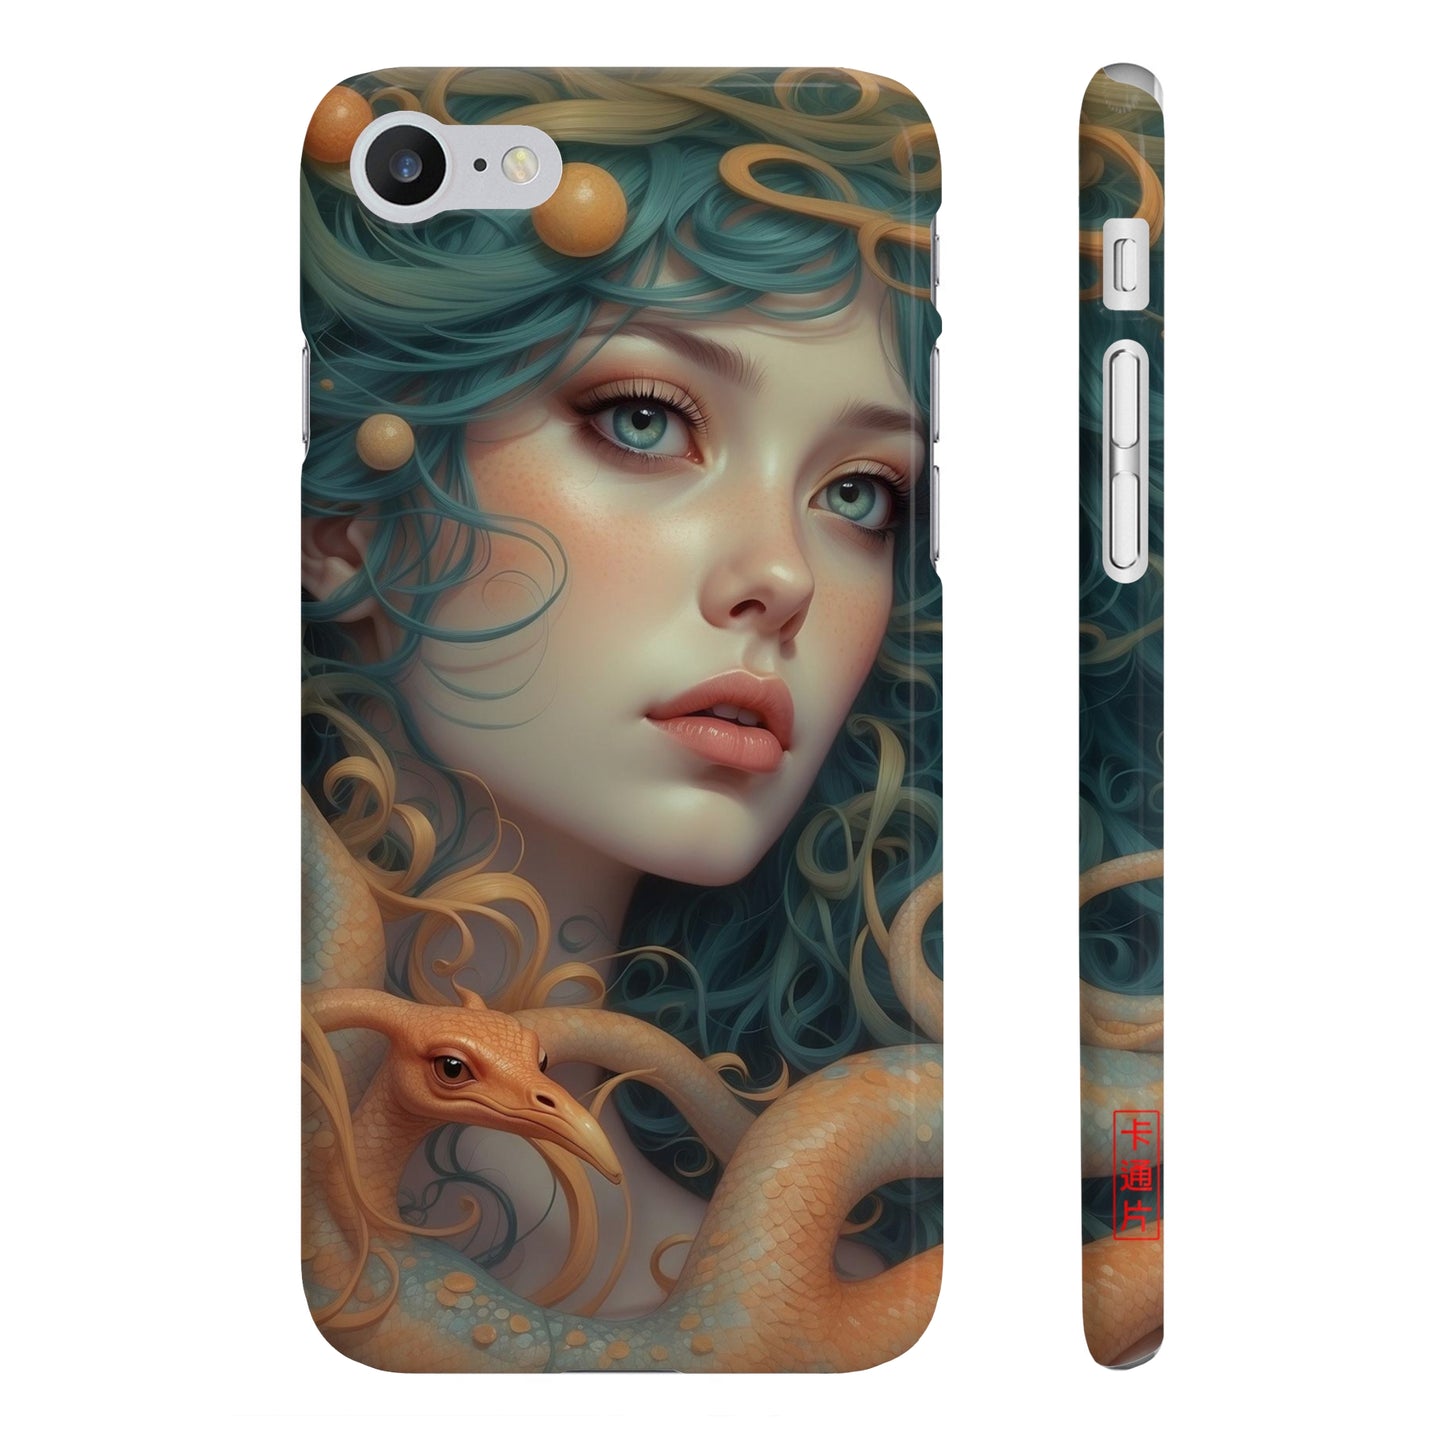 Kǎtōng Piàn - Mermaid Collection - 054 - Slim Phone Cases Printify